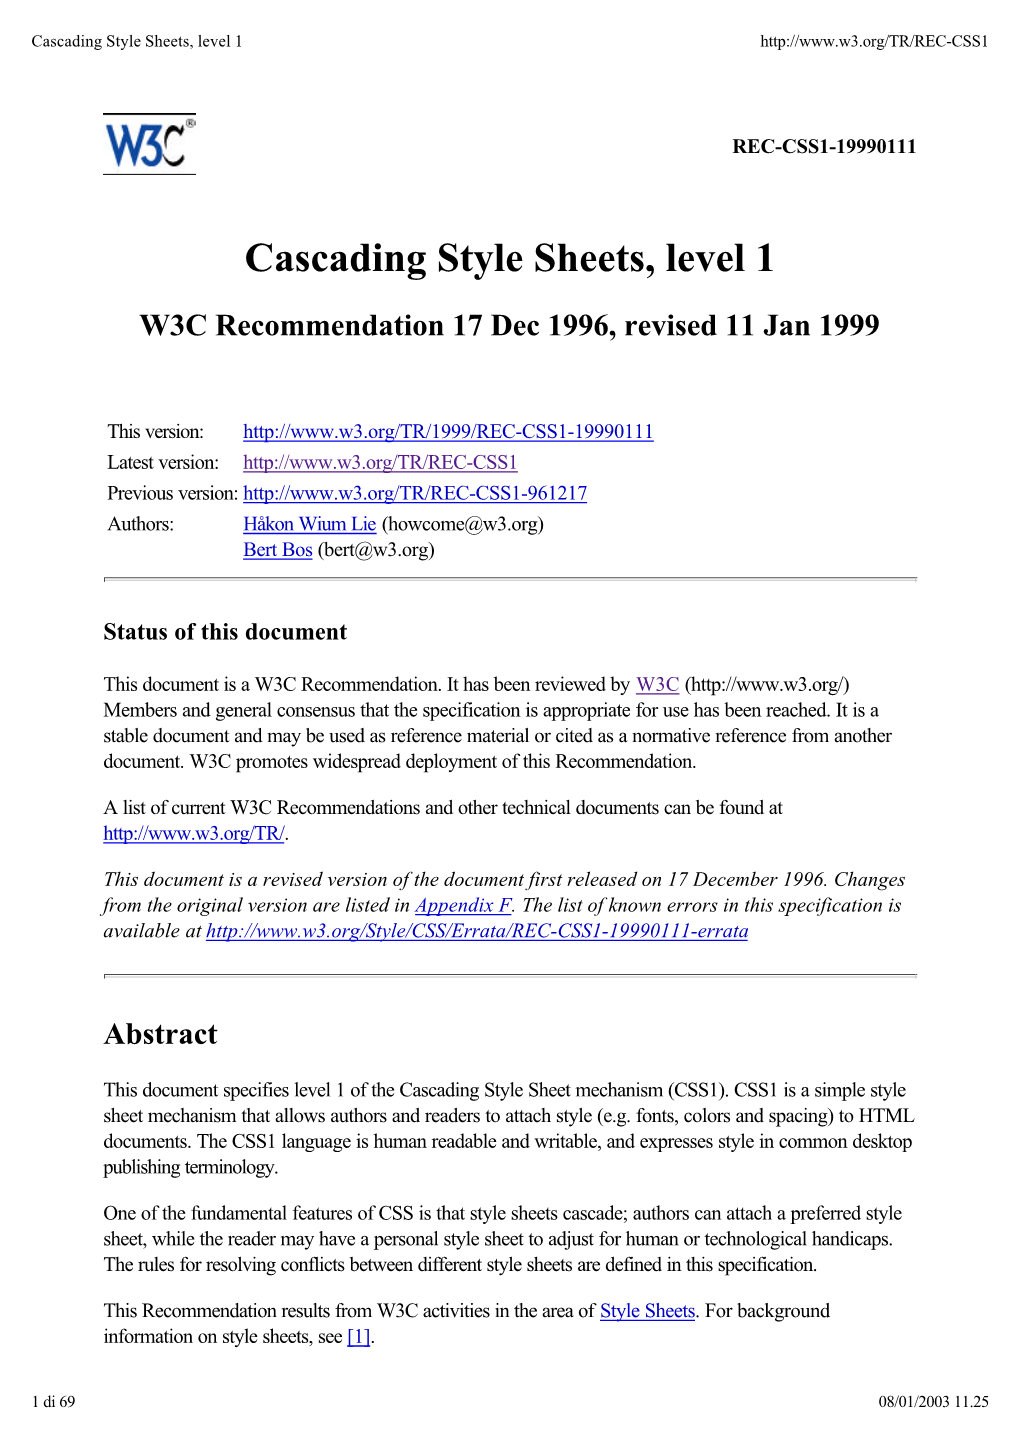 Cascading Style Sheets, Level 1